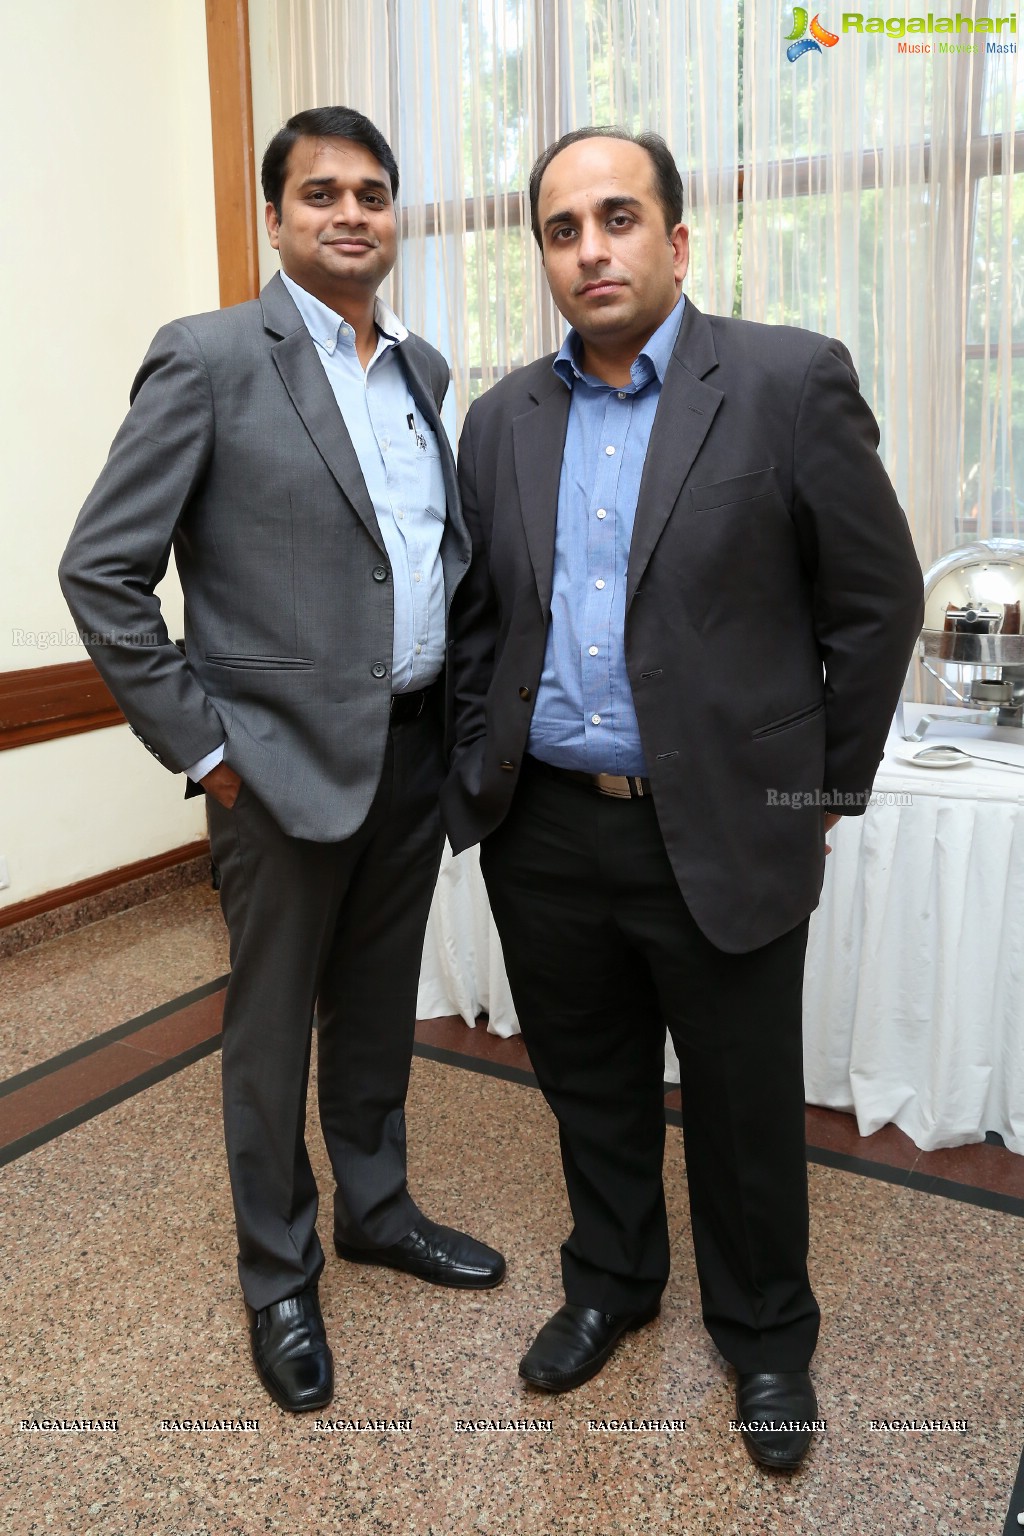 Sandor Orthopedics Press Meet at Taj Deccan, Hyderabad